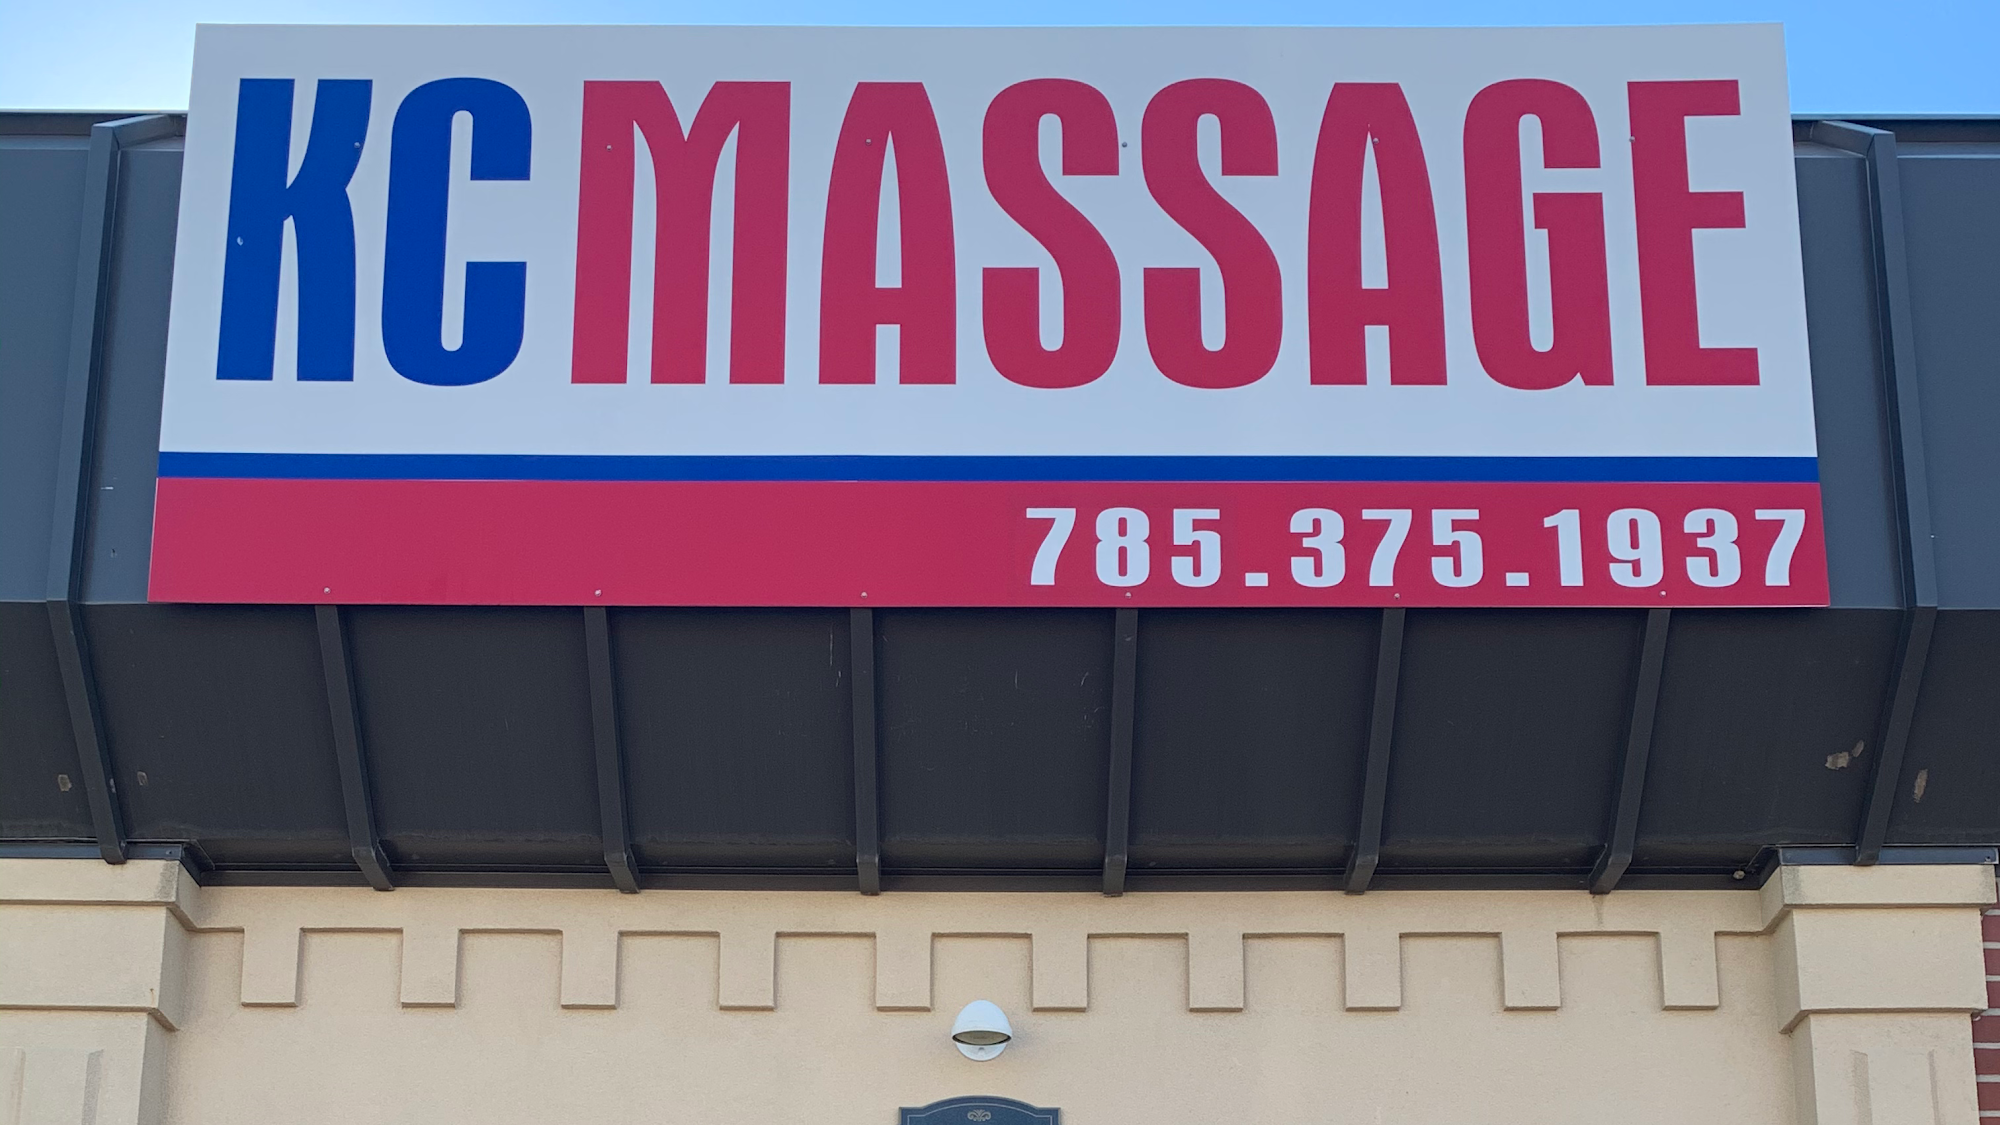 KC Massage